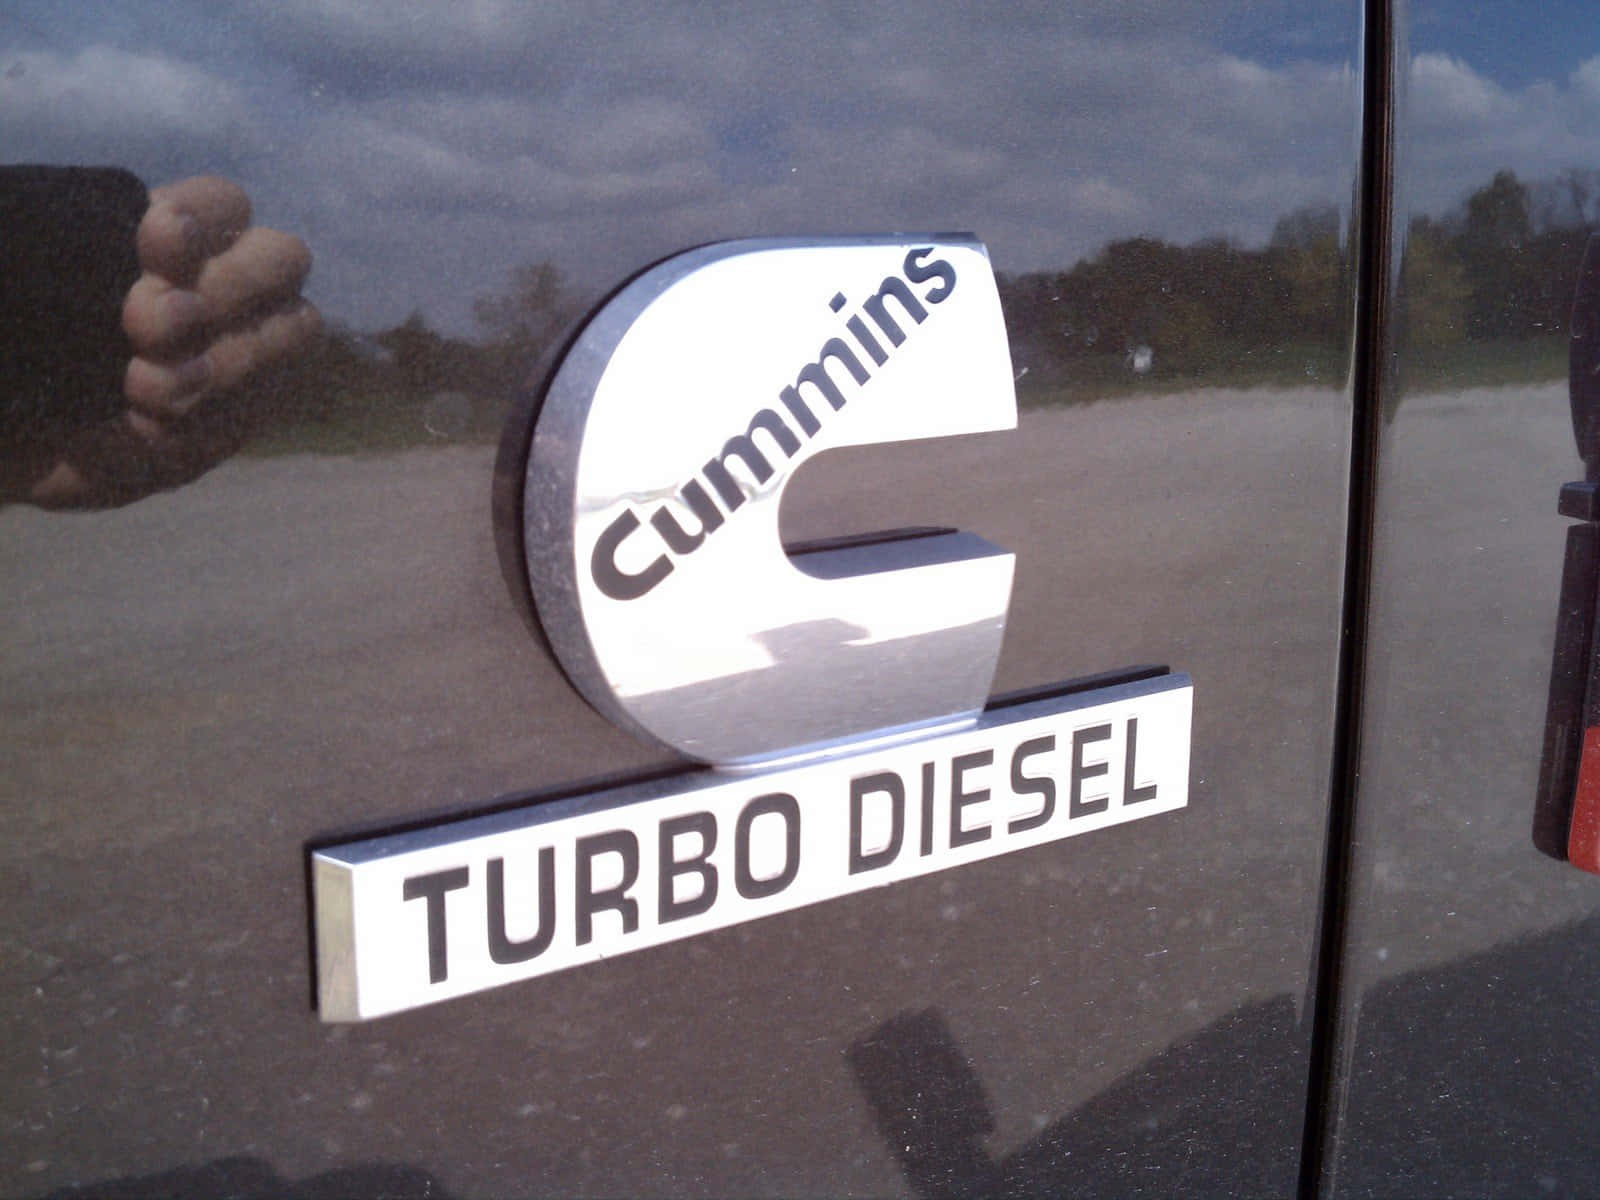 Enlastbil Med En Turbo Dieselmotor Klistermärke Wallpaper